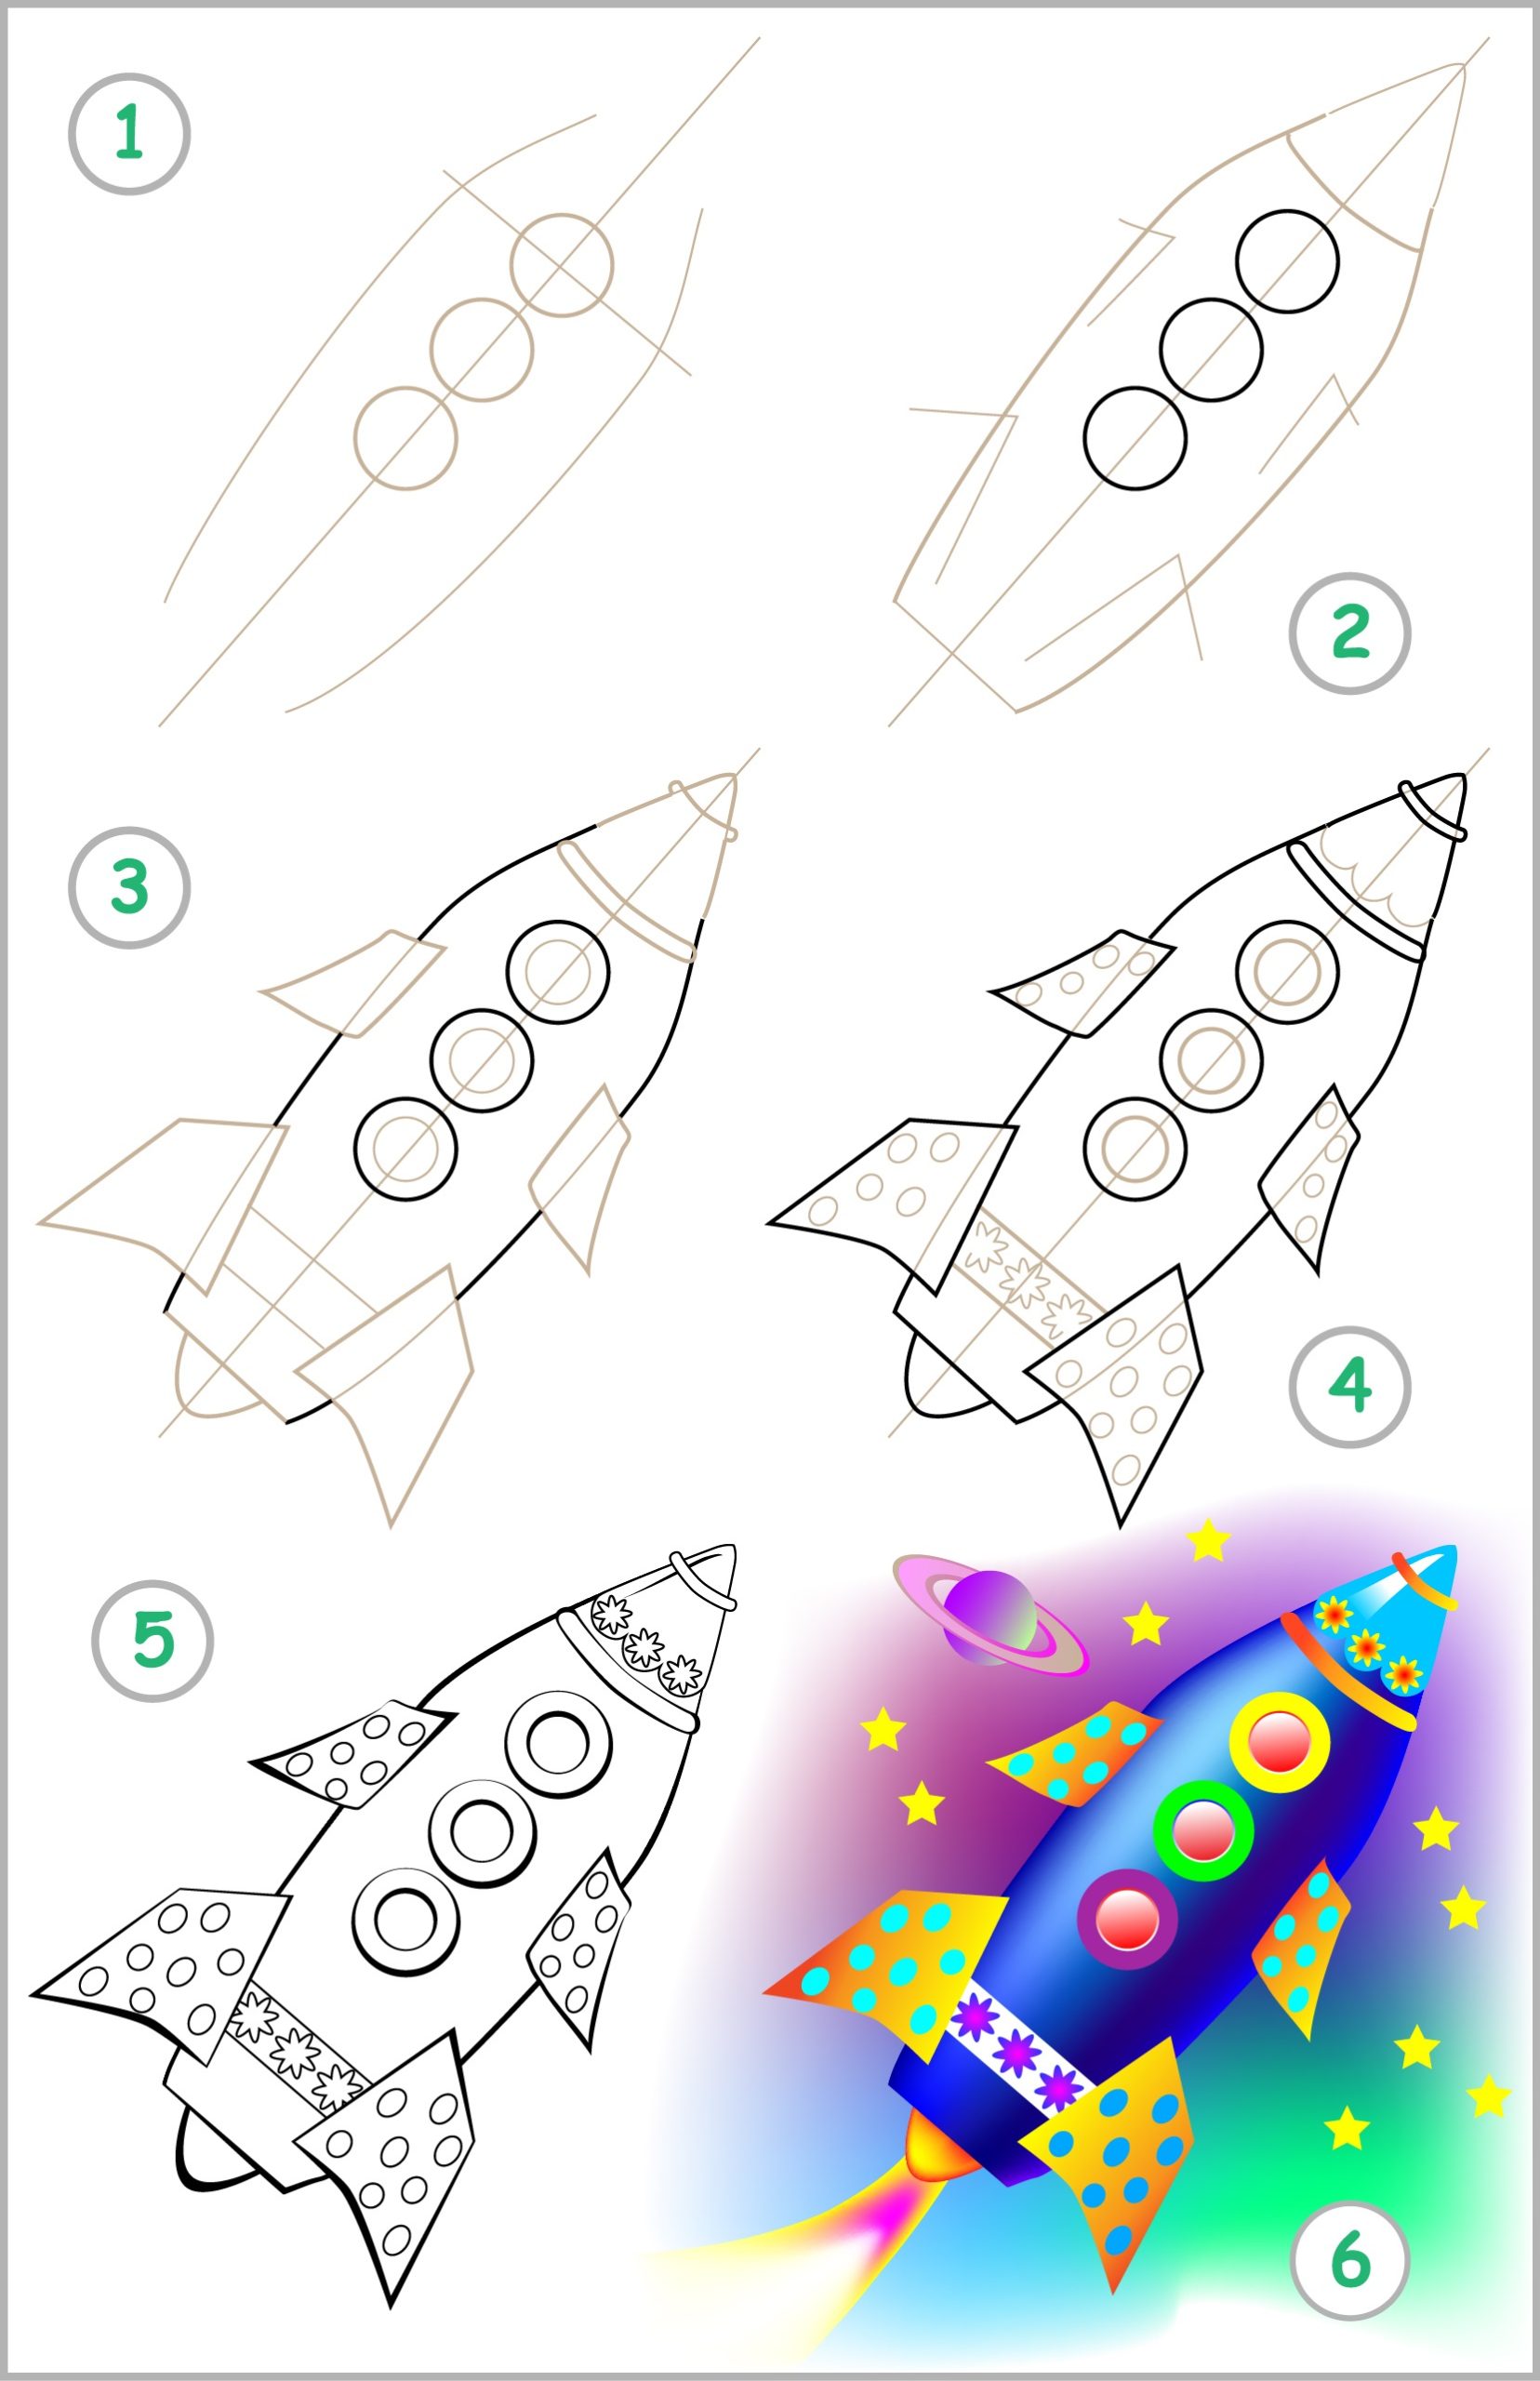 How to Draw a Rocket Draw Advisor